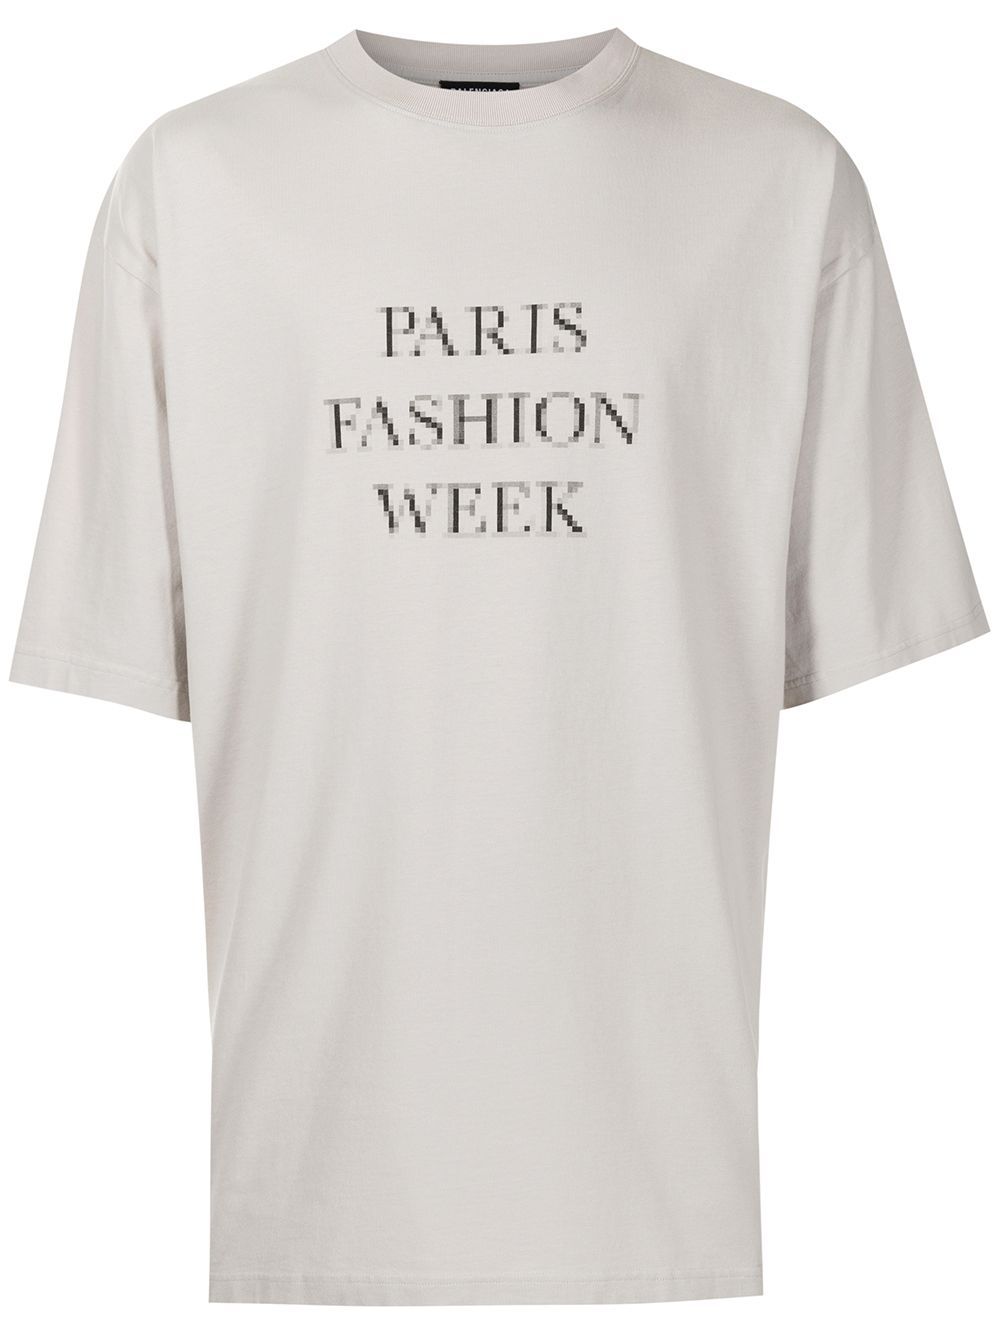 BALENCIAGA PARIS FASHION WEEK Tシャツ